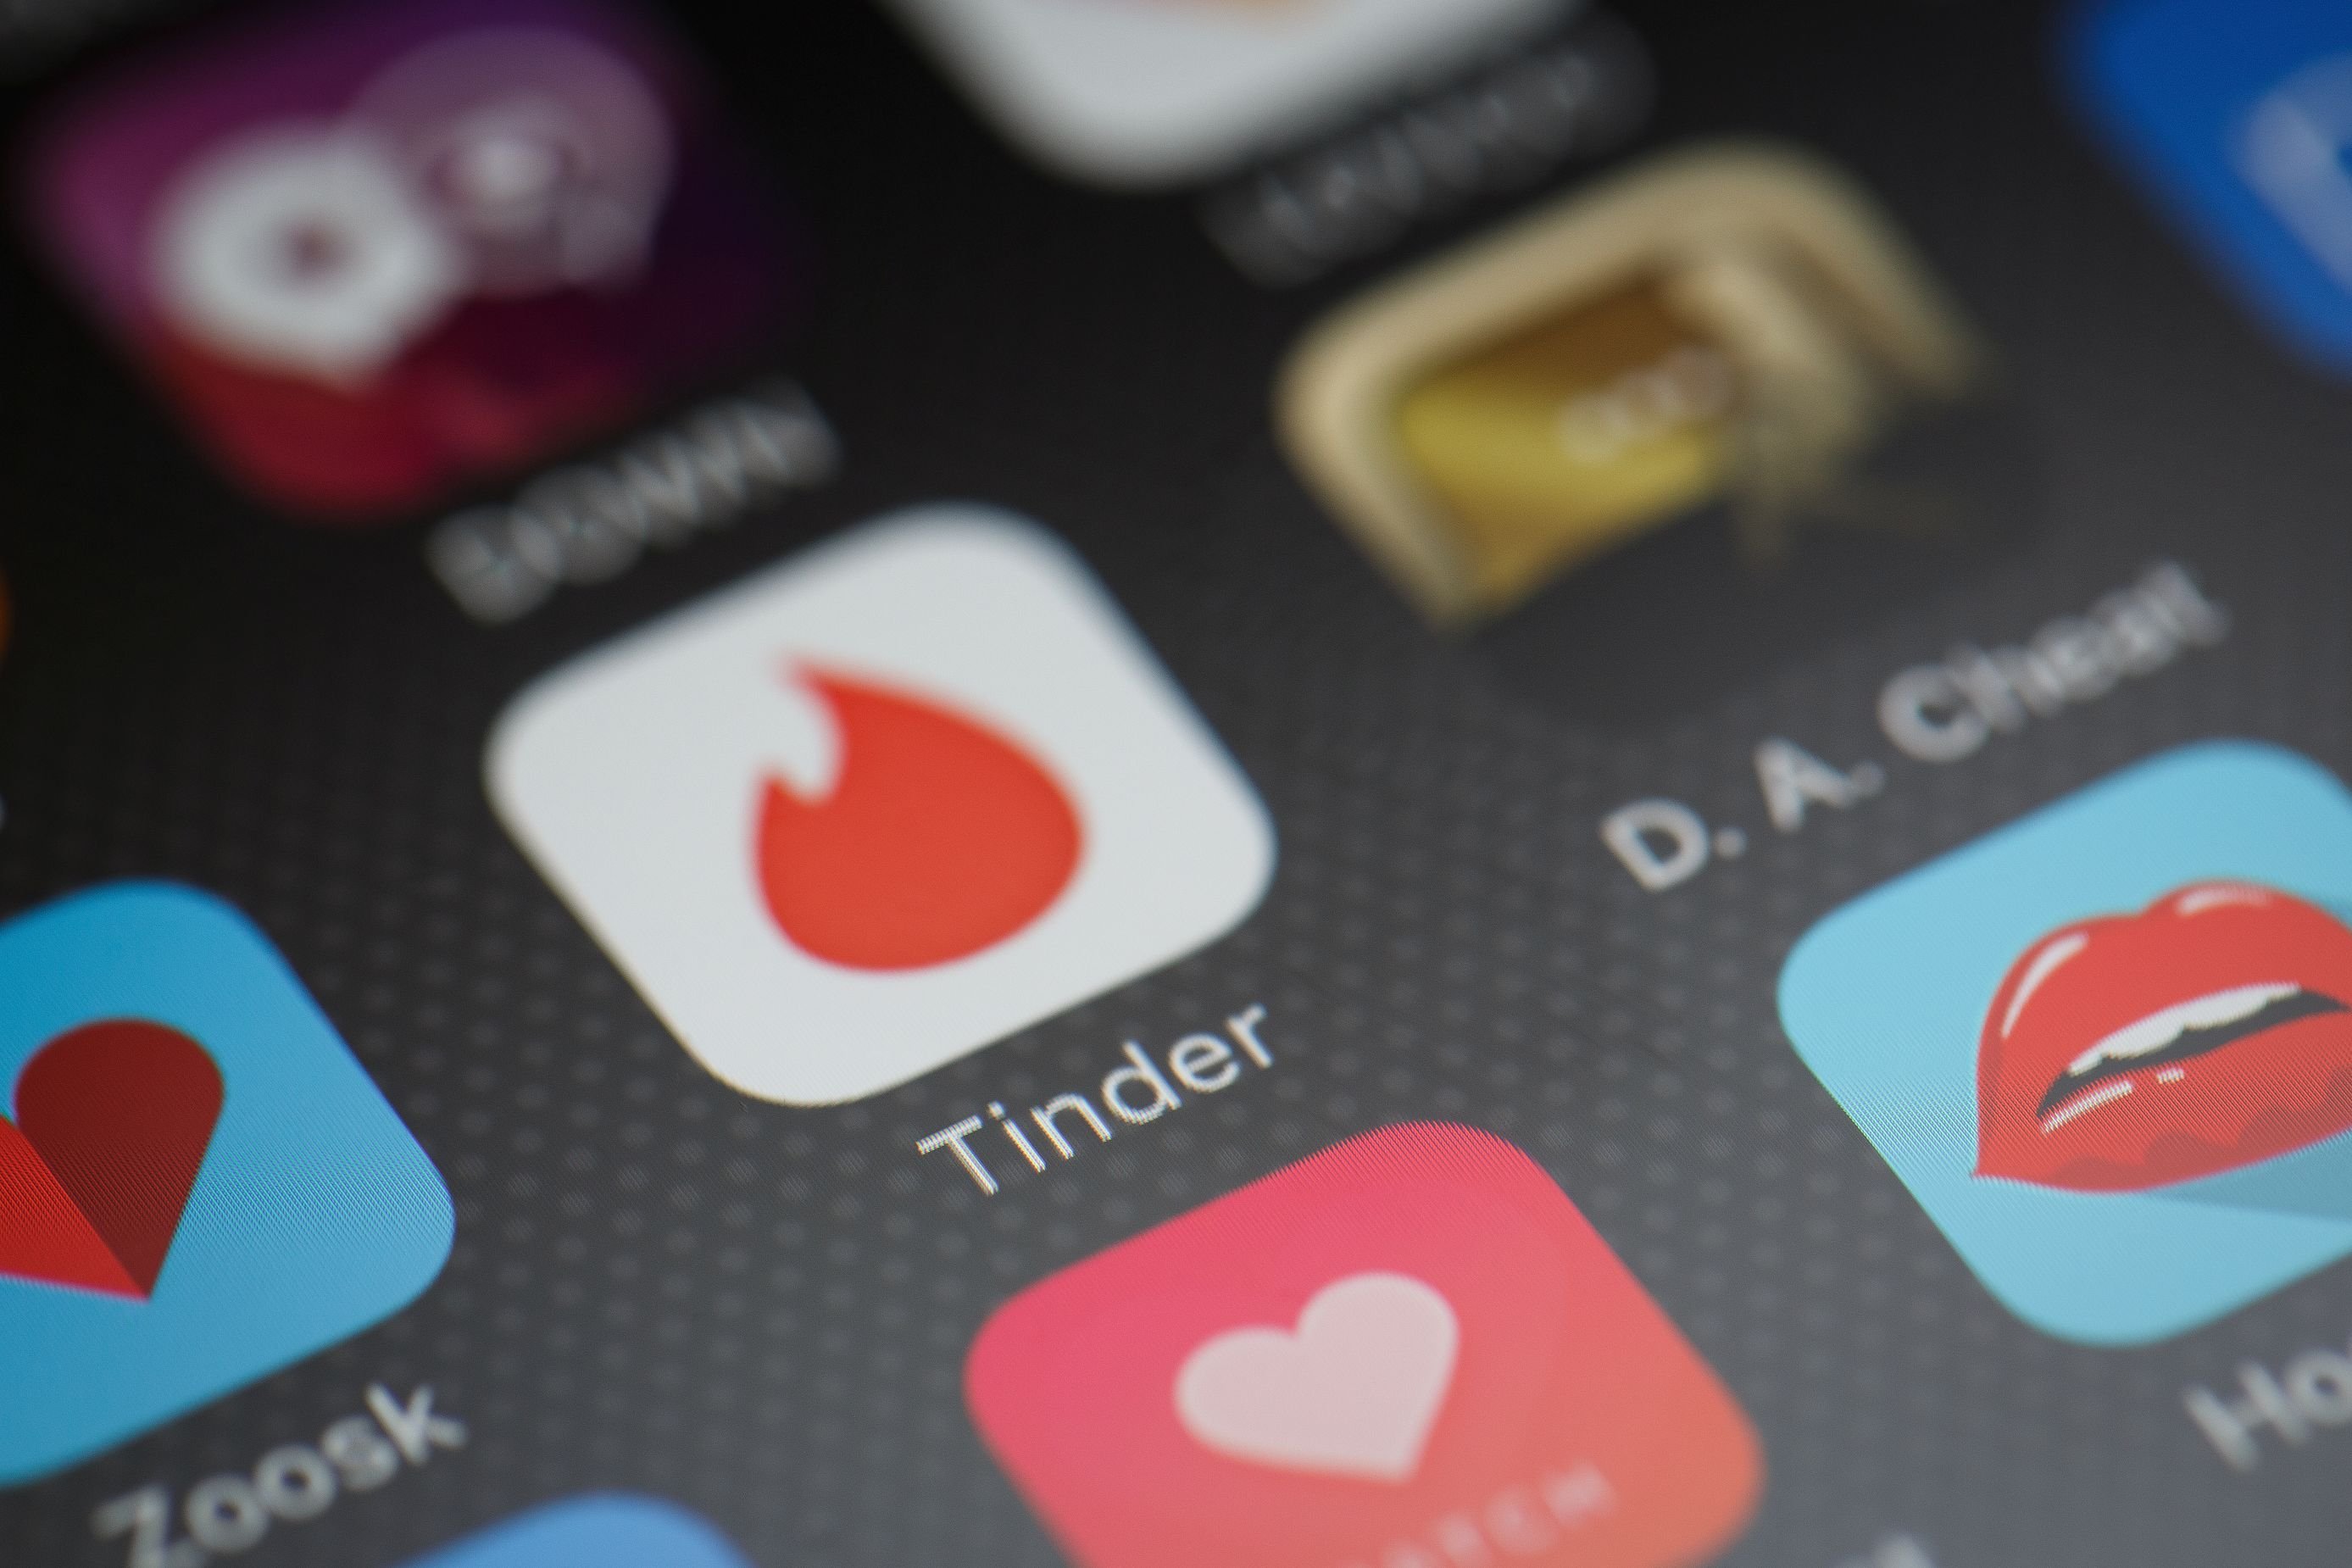 kostenlose dating app deutschland